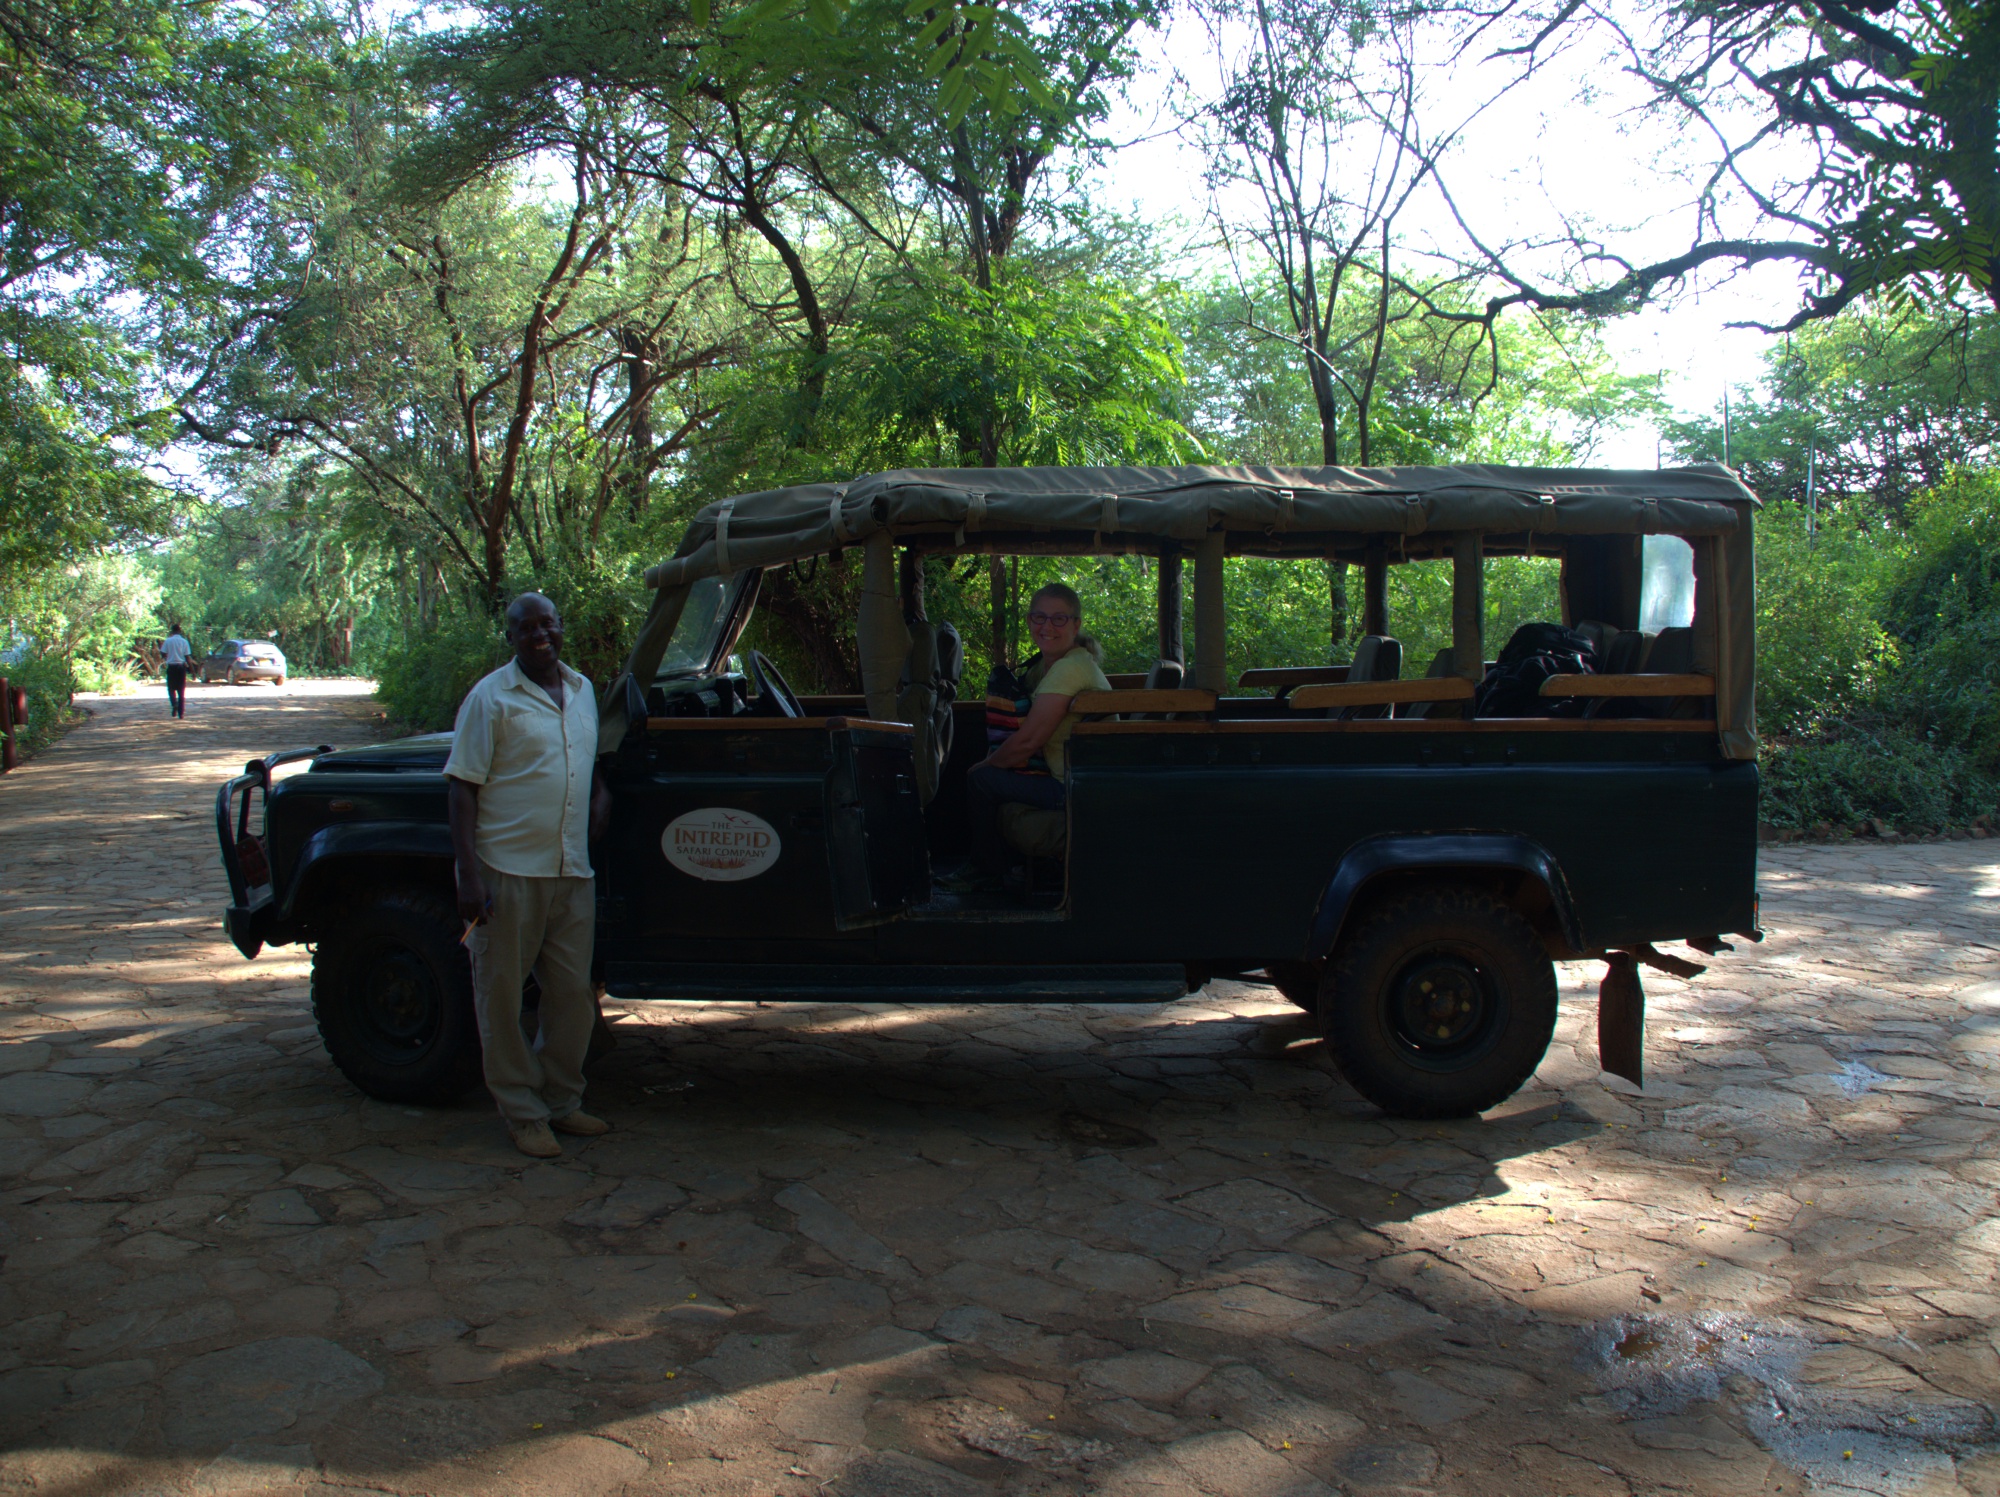 Dom, our guide in Samburu